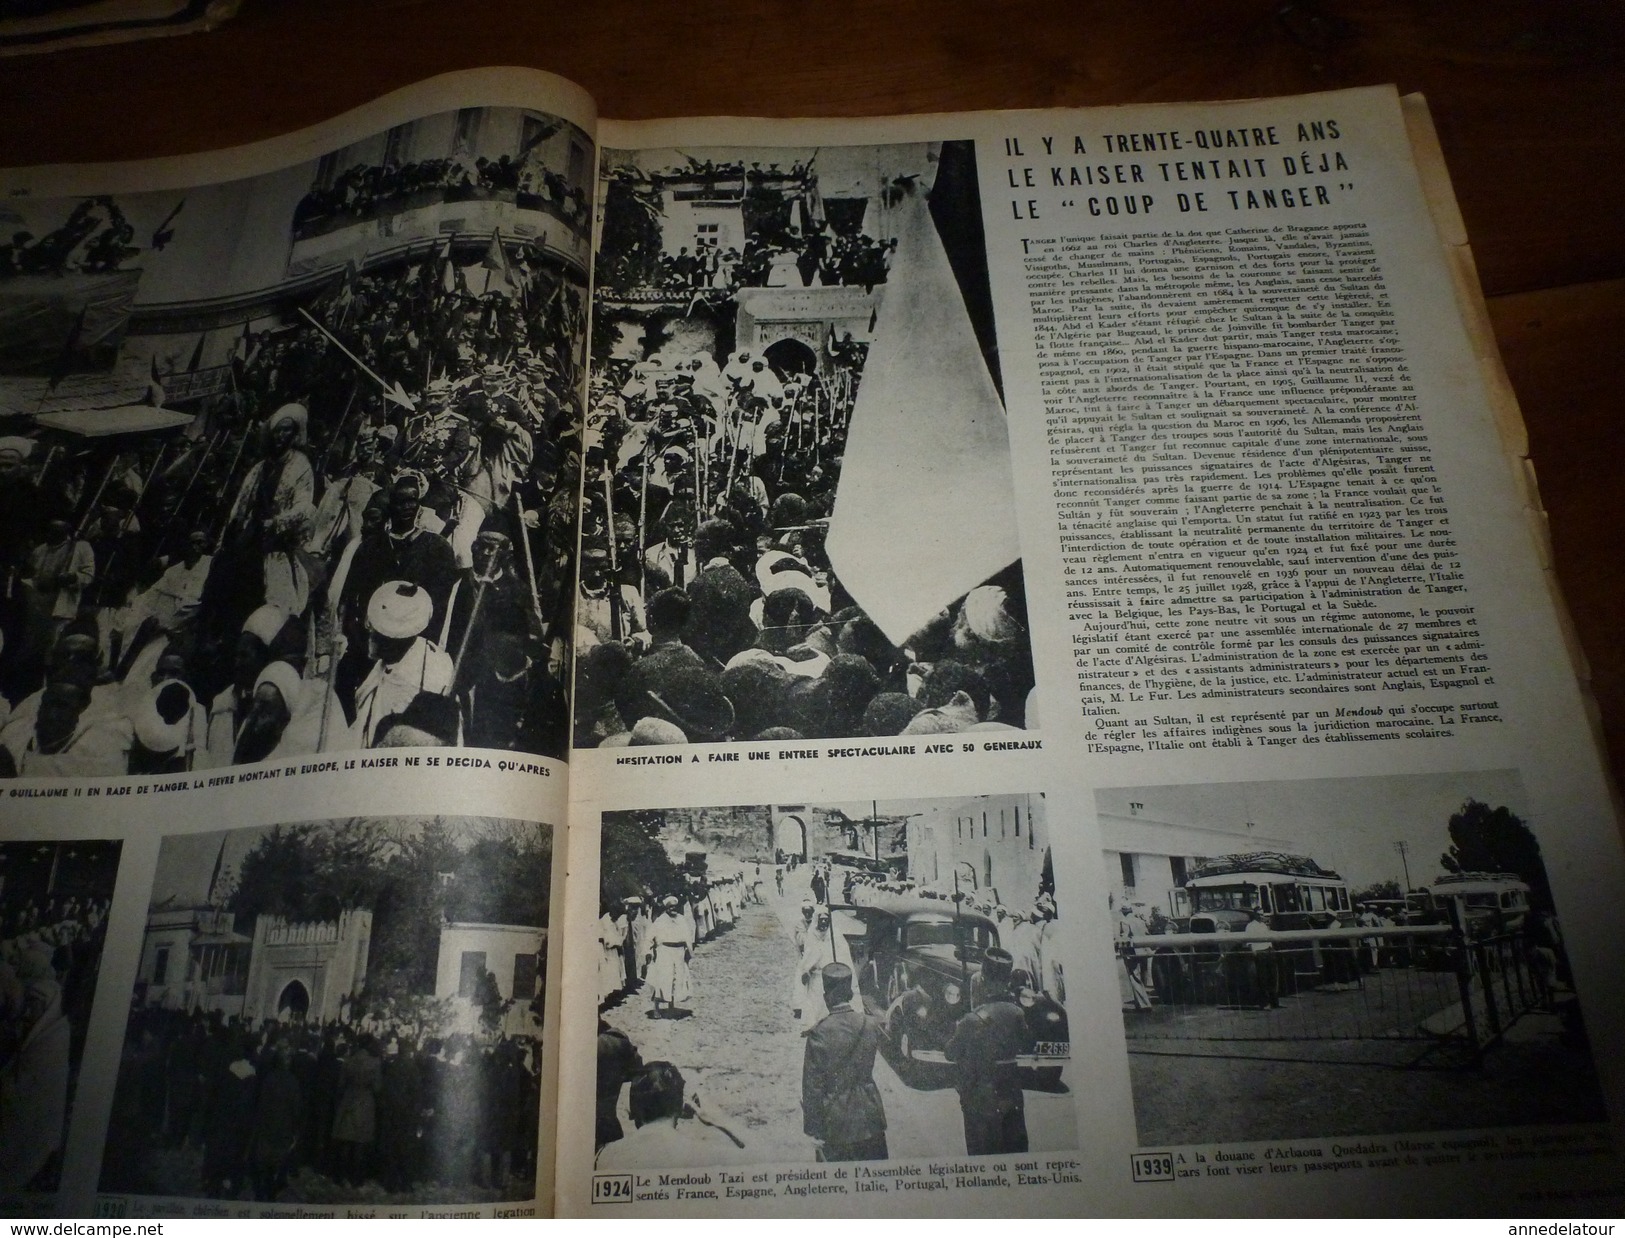 1939 MATCH: Femmes a barbe;SALON, Saint-Cyr de l'Air:Femmes-pilotes-d'avion;MANOSQUE et l'histoire des enfants RICARD